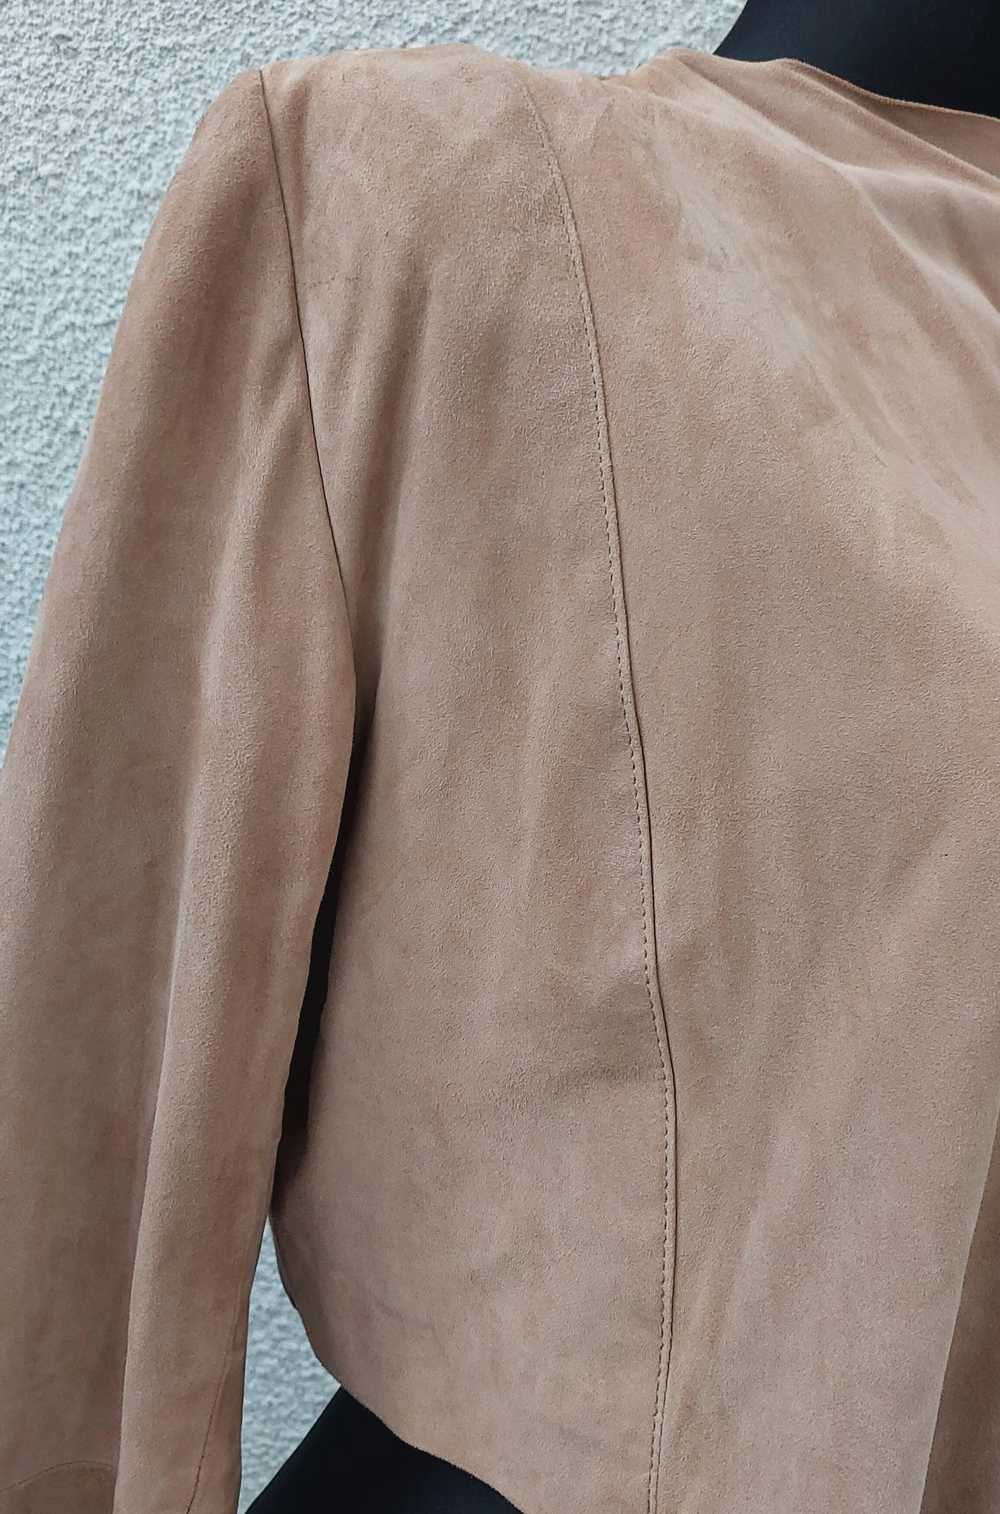 Other Short goatskin jacket - image 8